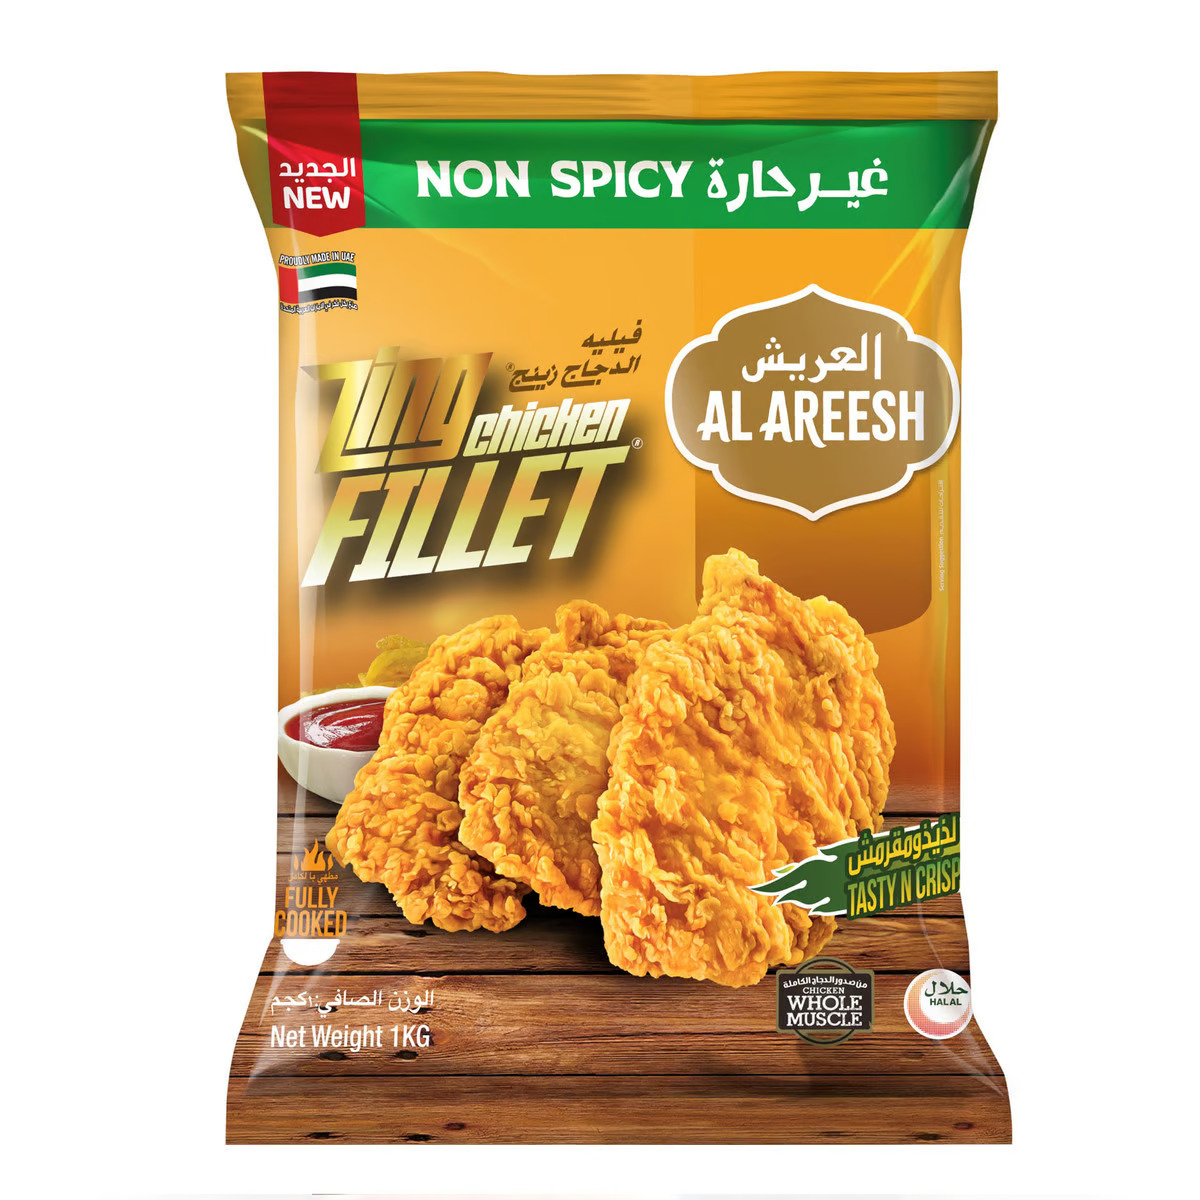 Buy Al Areesh Non Spicy Zing Chicken Fillet Value Pack 1 kg Online at Best Price | Zingers | Lulu UAE in UAE